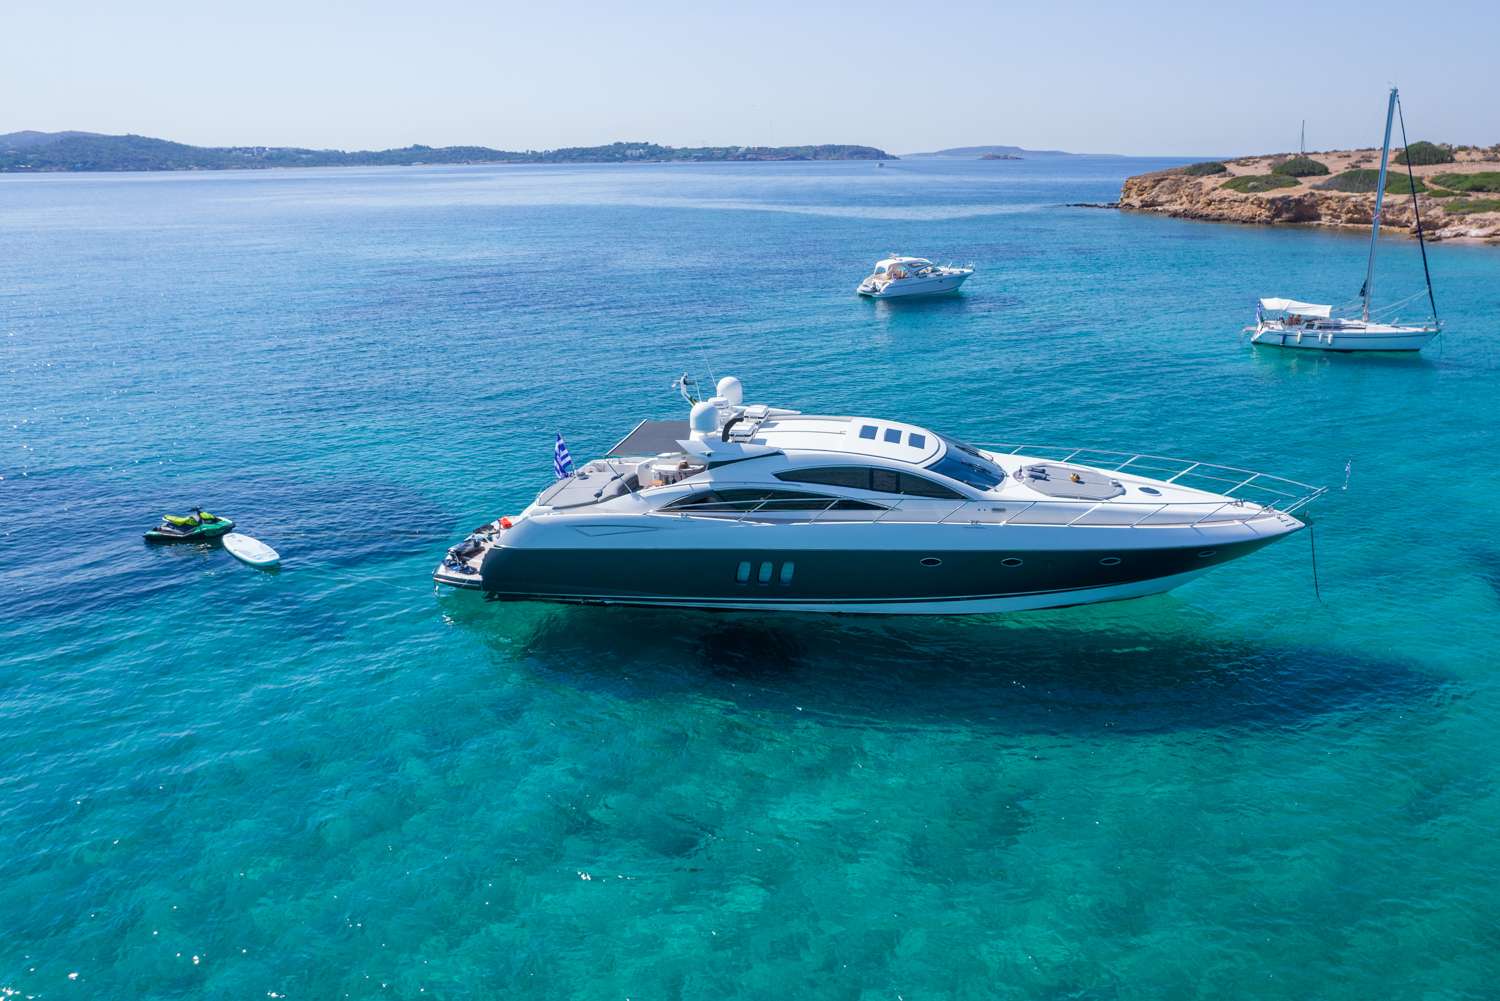 Elentari - Yacht Charter Palaio Faliro & Boat hire in Greece 1